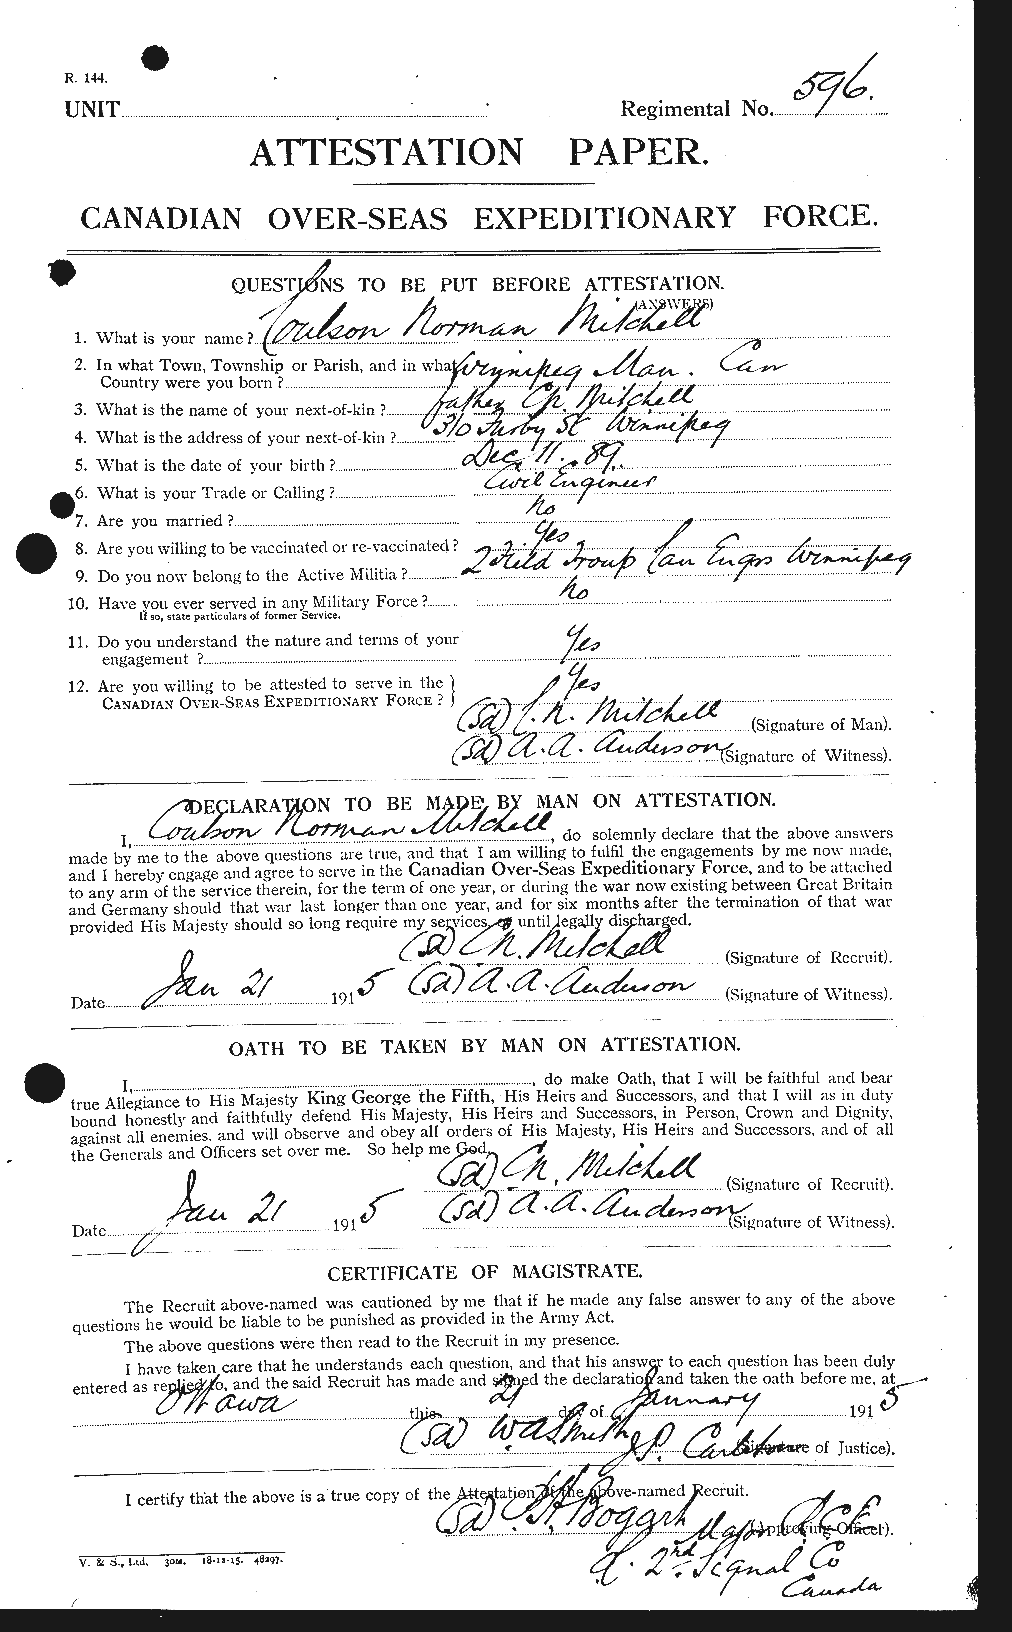 Dossiers du Personnel de la Première Guerre mondiale - CEC 496159a